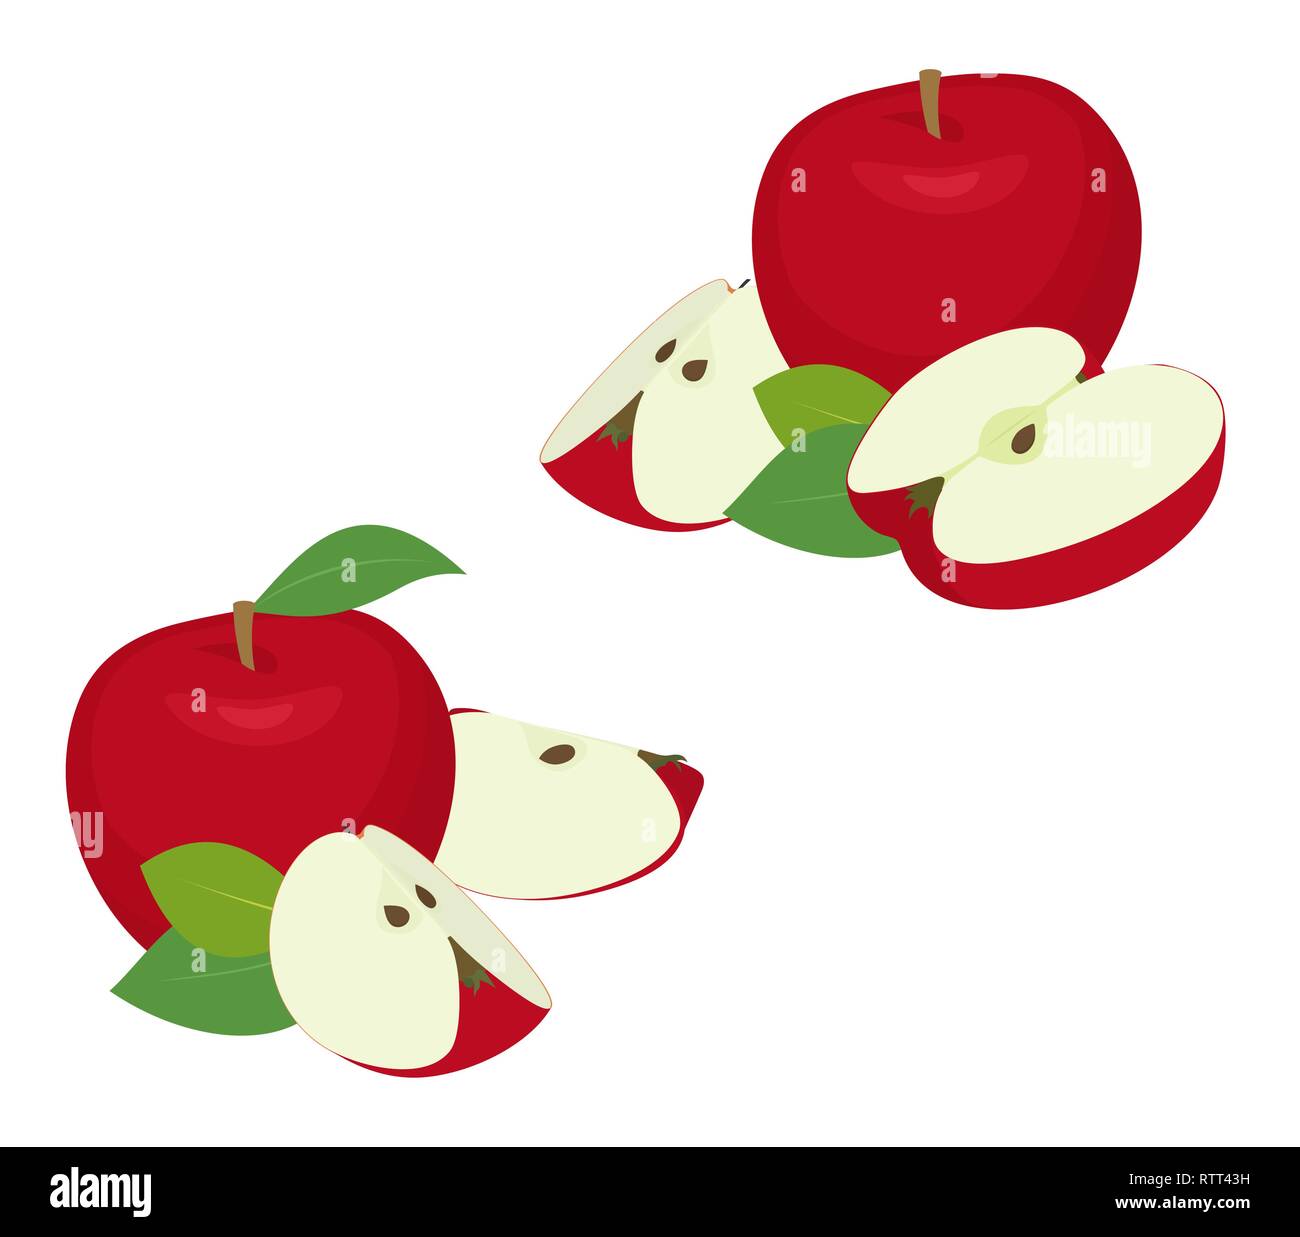 Apple Stucke Gesetzt Ganze Rote Apfel Obst Mit Slice Ausschneiden Mit Blattern Auf Weissem Hintergrund Als Package Design Element Stock Vektorgrafik Alamy